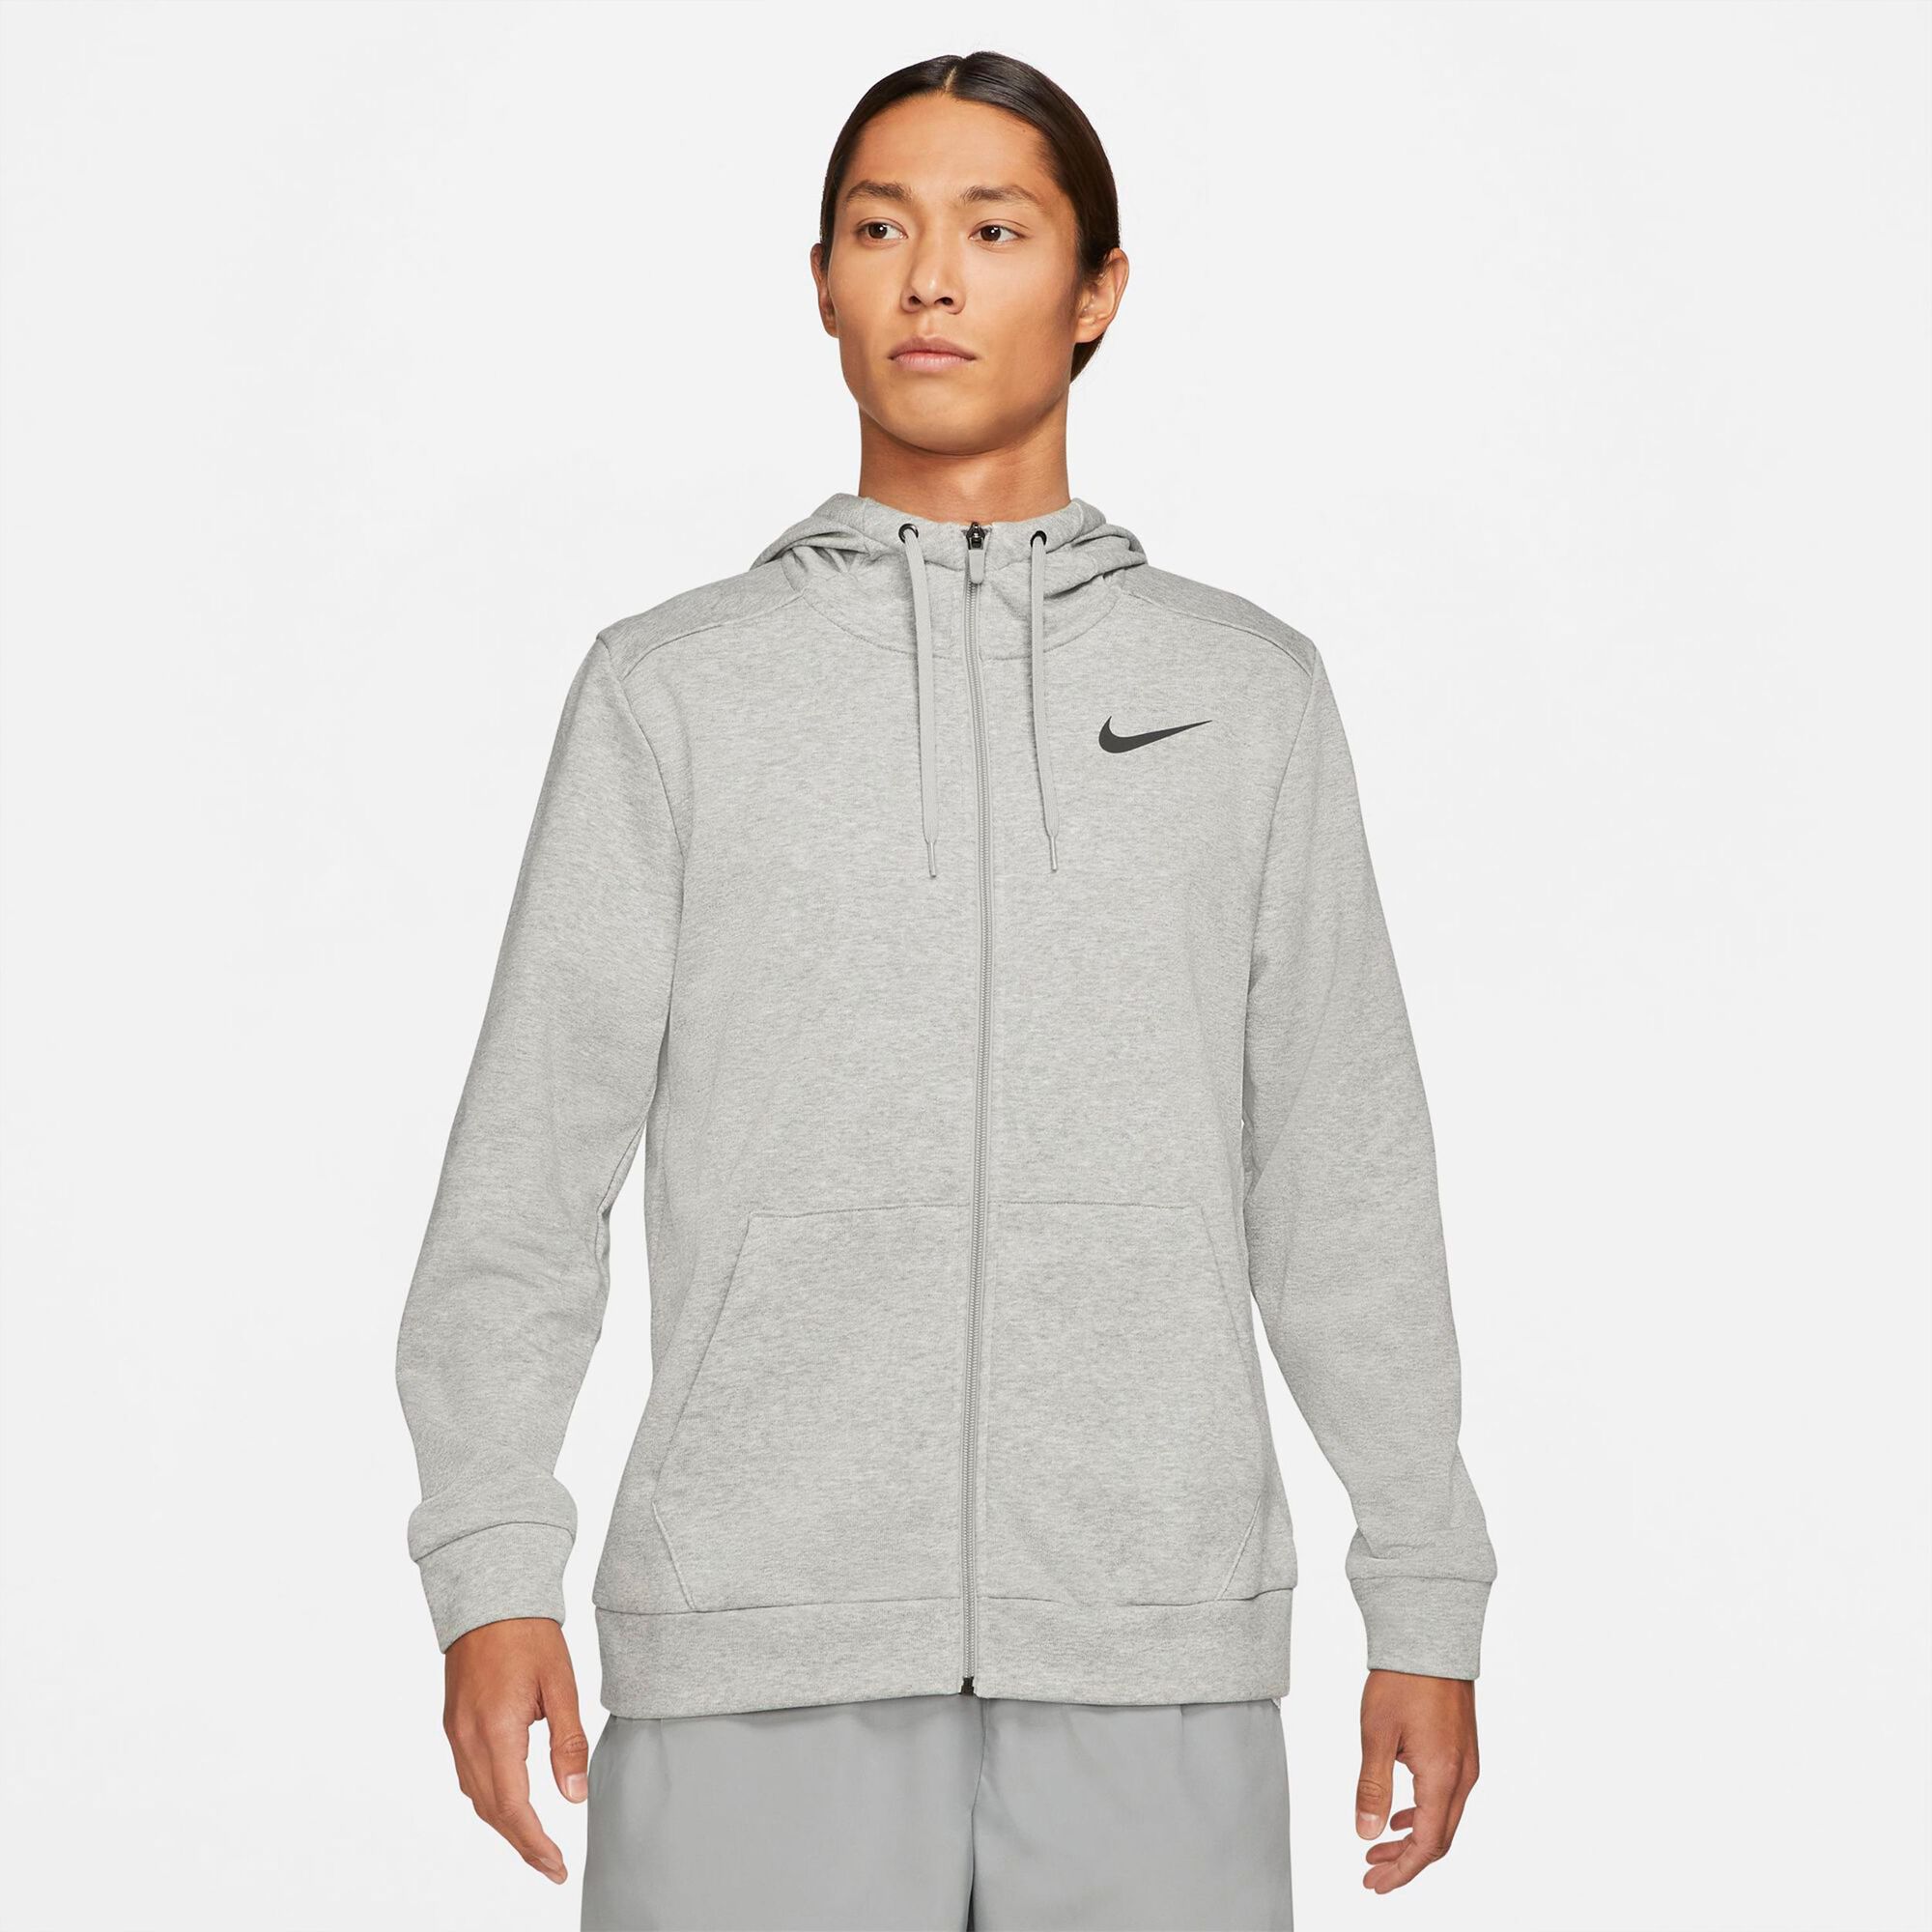 Buy Nike Dri-Fit Zip Hoodie Men Grey, Black online | Tennis Point UK